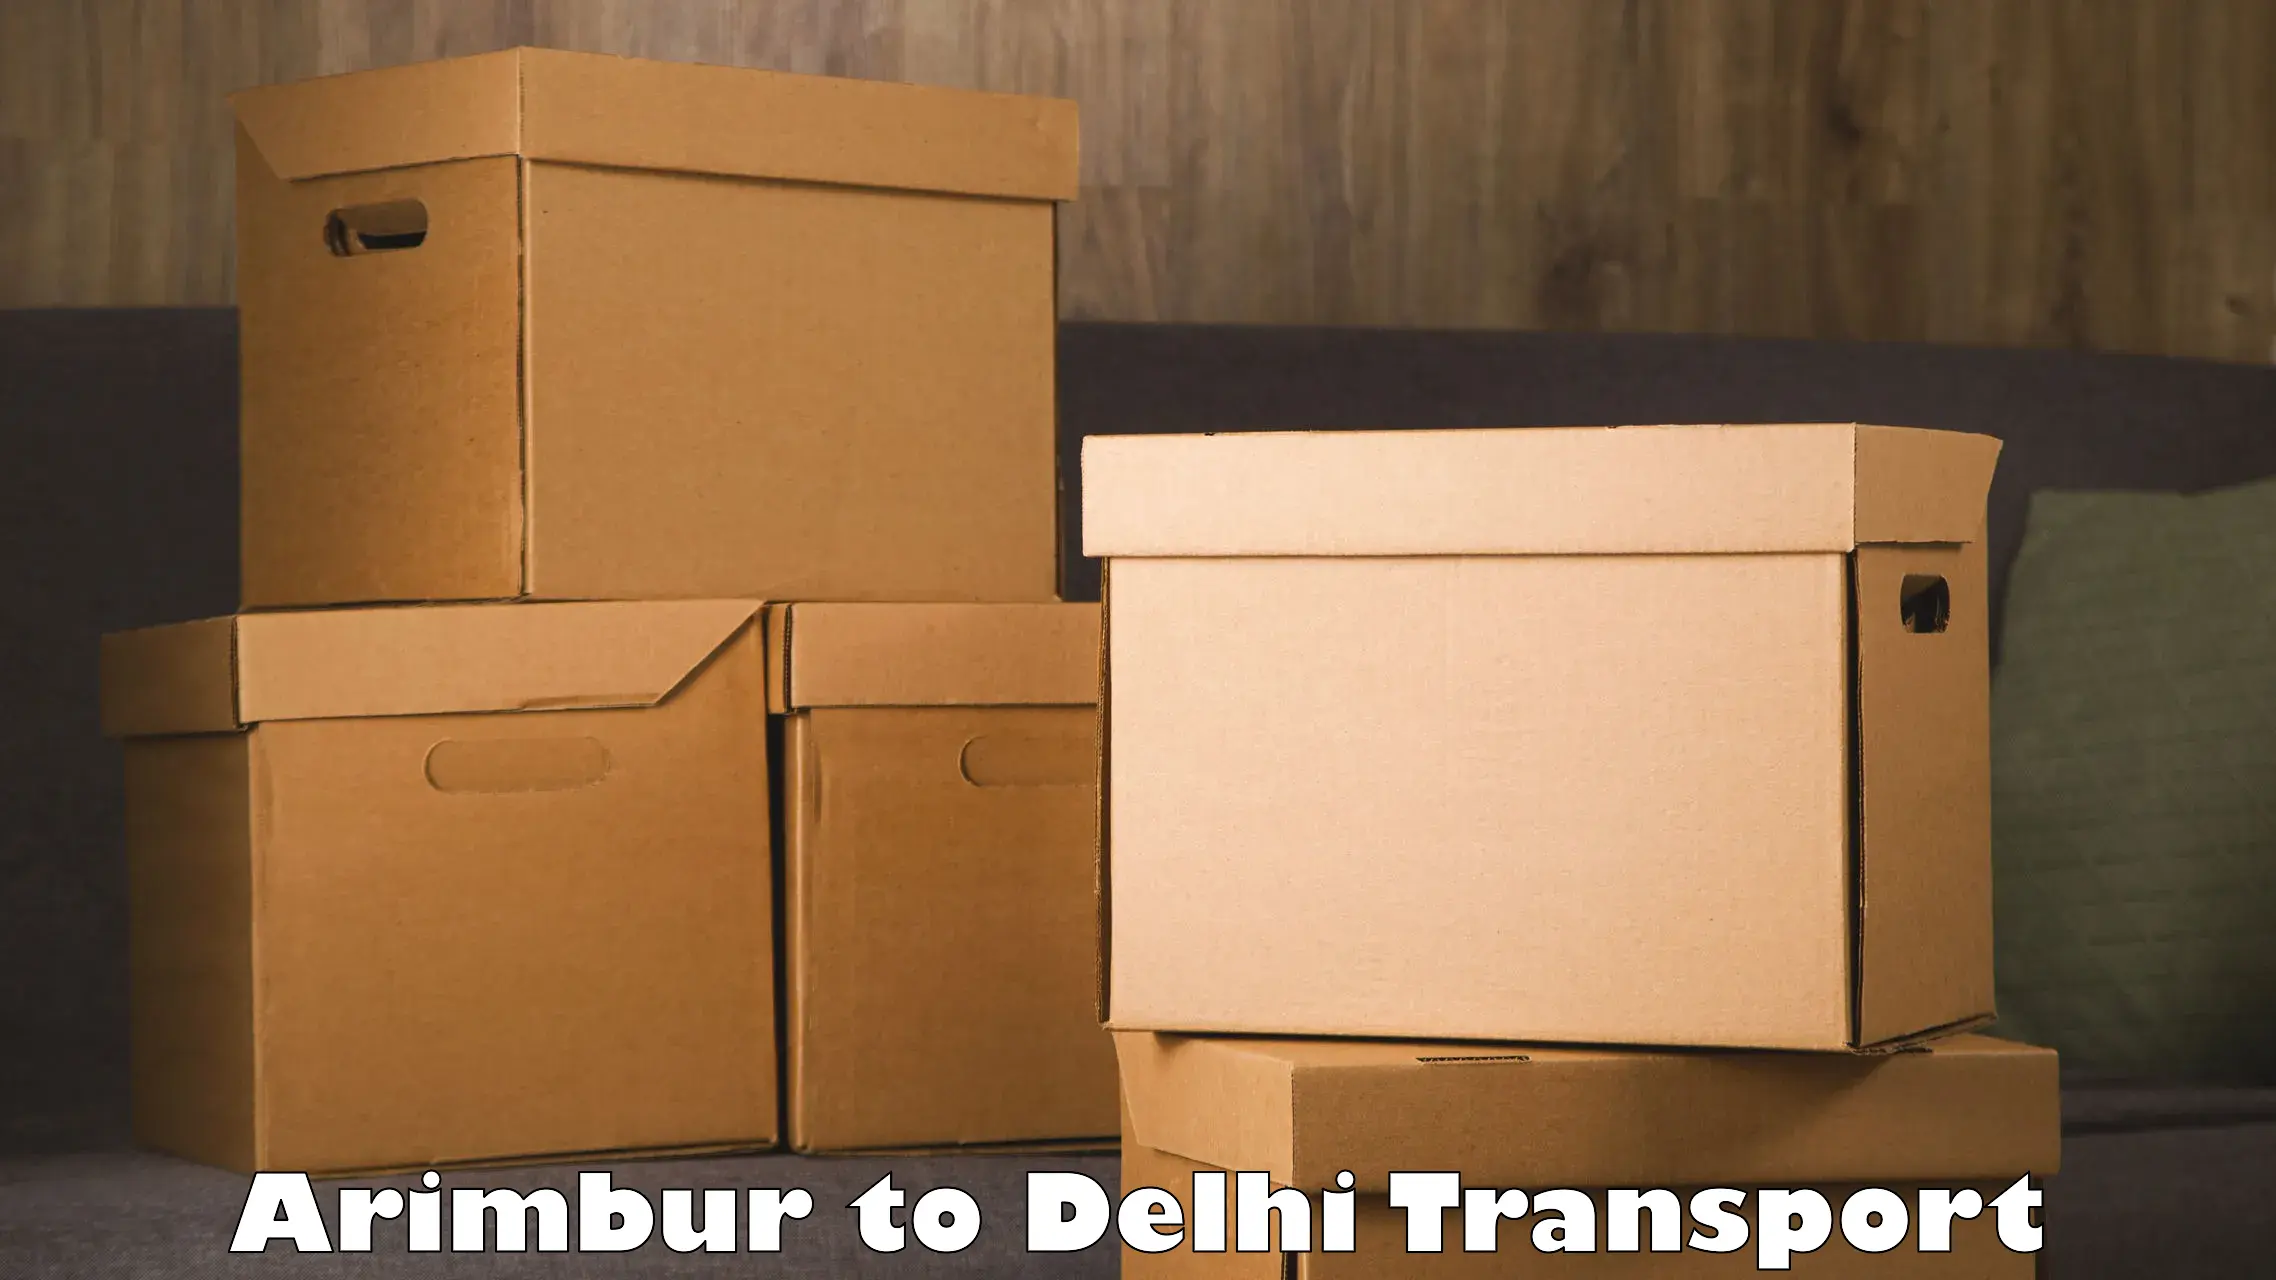 Furniture transport service Arimbur to Delhi